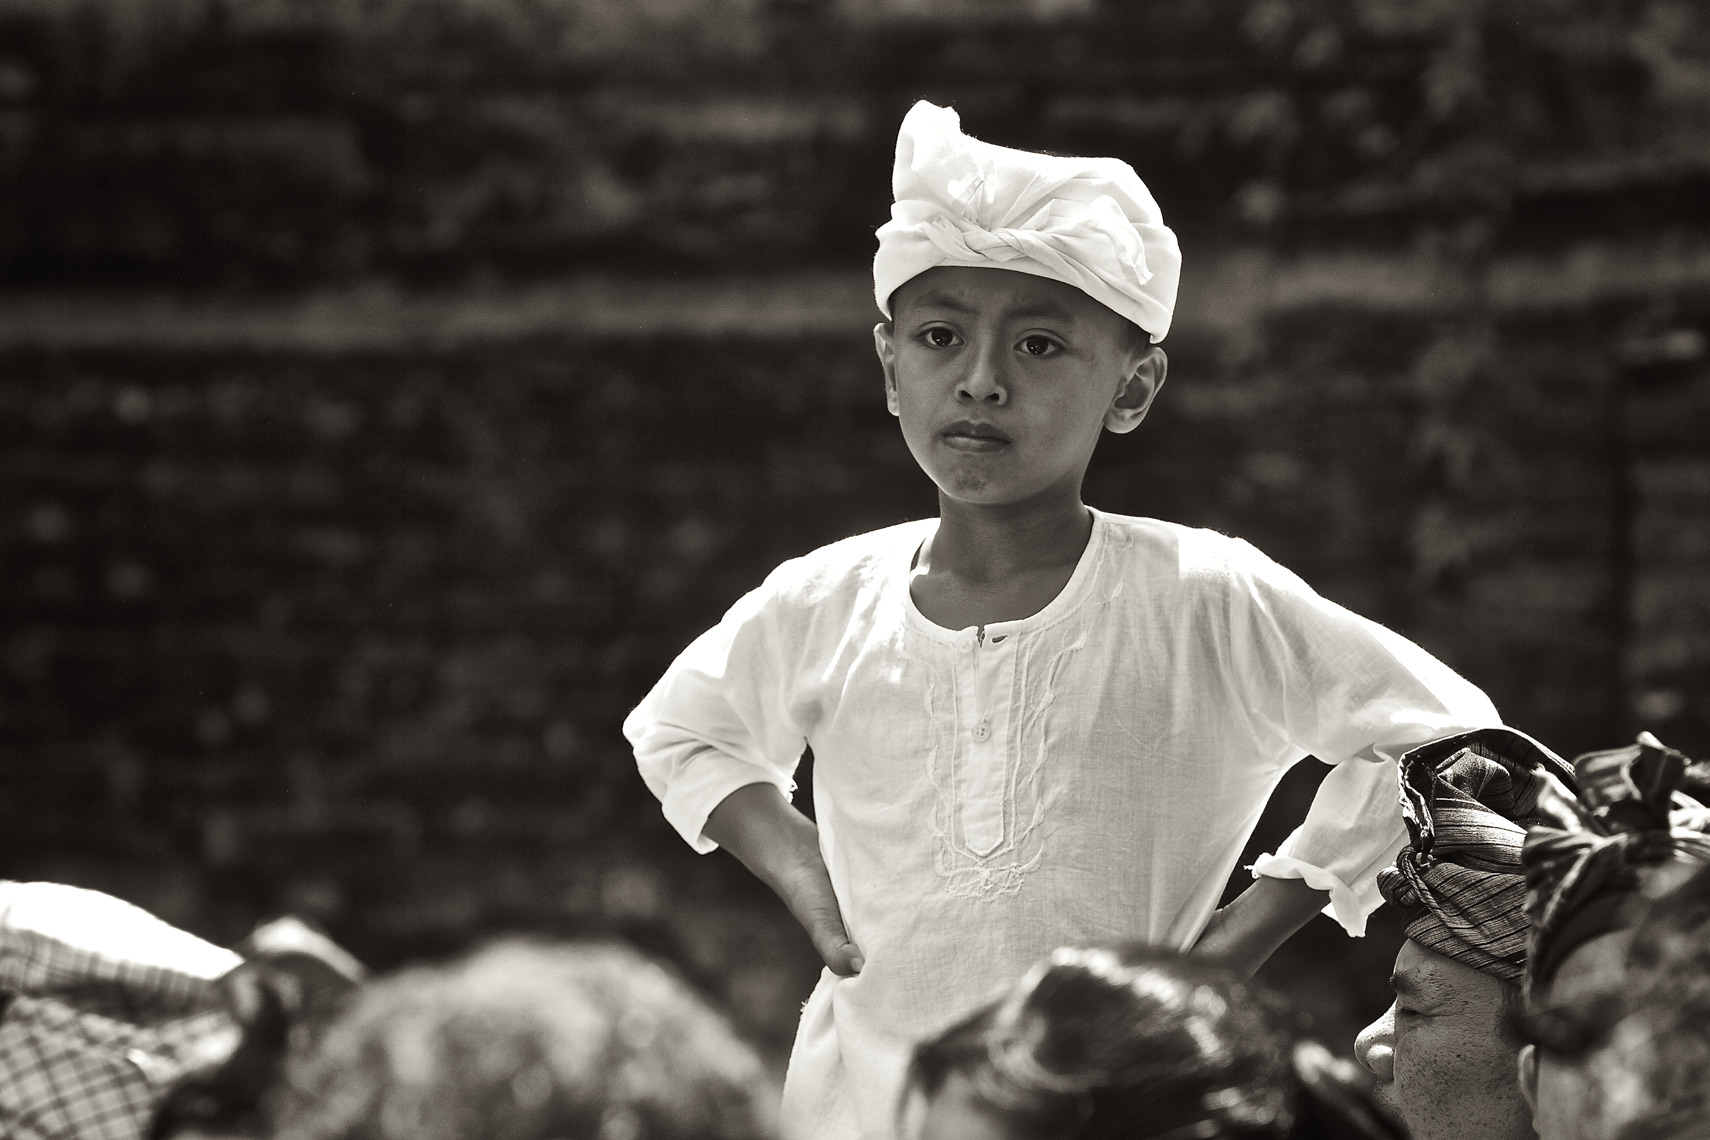 Local boy dressed for cerimony Ubud, Bali/Steve Mason Photography